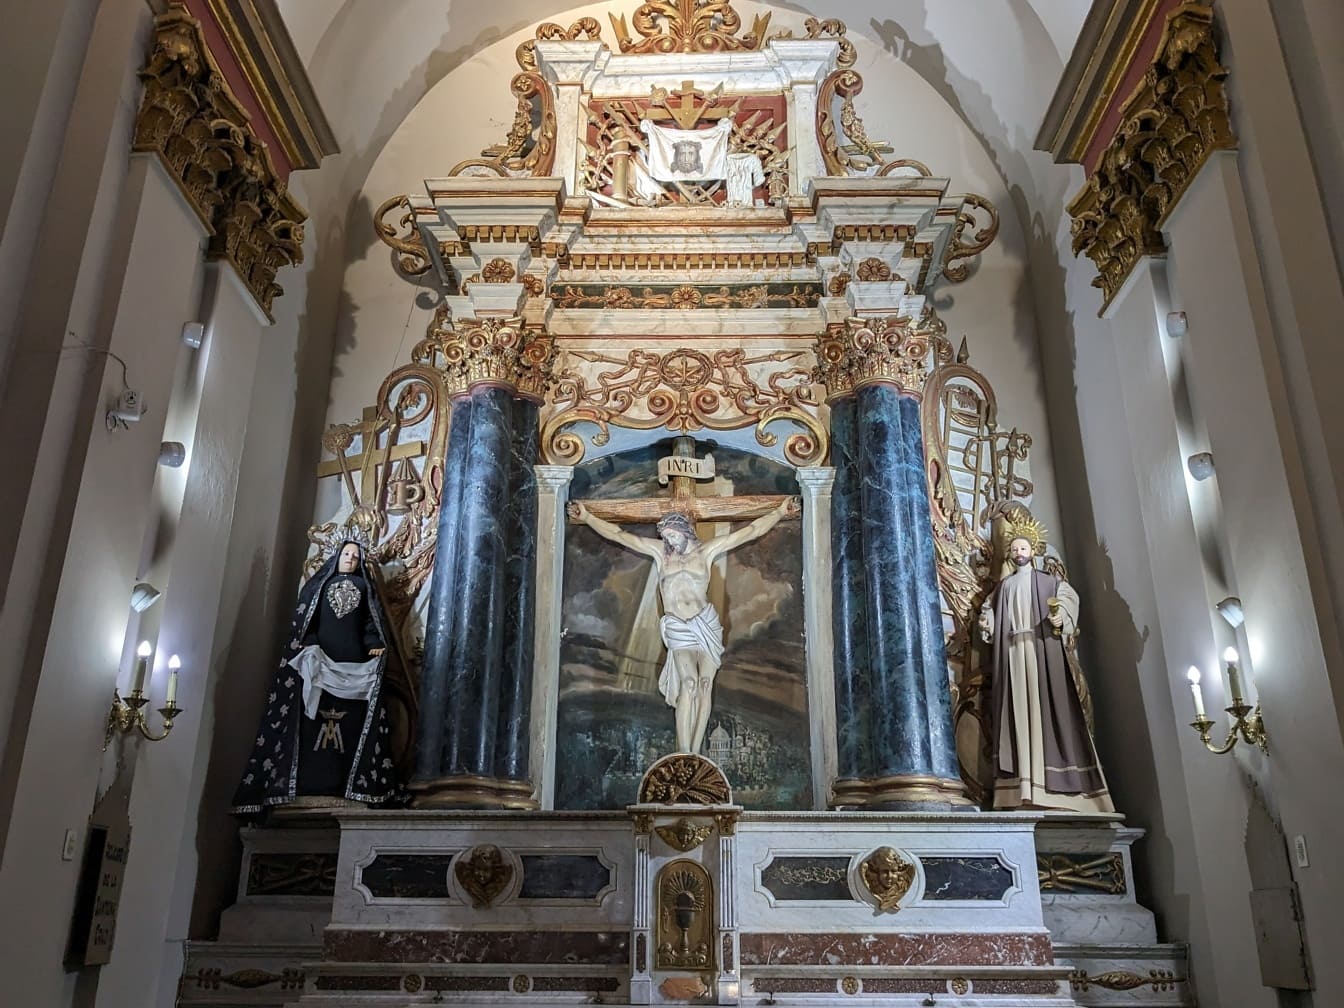 Verzierter Altar mit Statue eines Jesus Christus am Kreuz, der die Auferstehung in der südamerikanischen katholischen Kirche darstellt